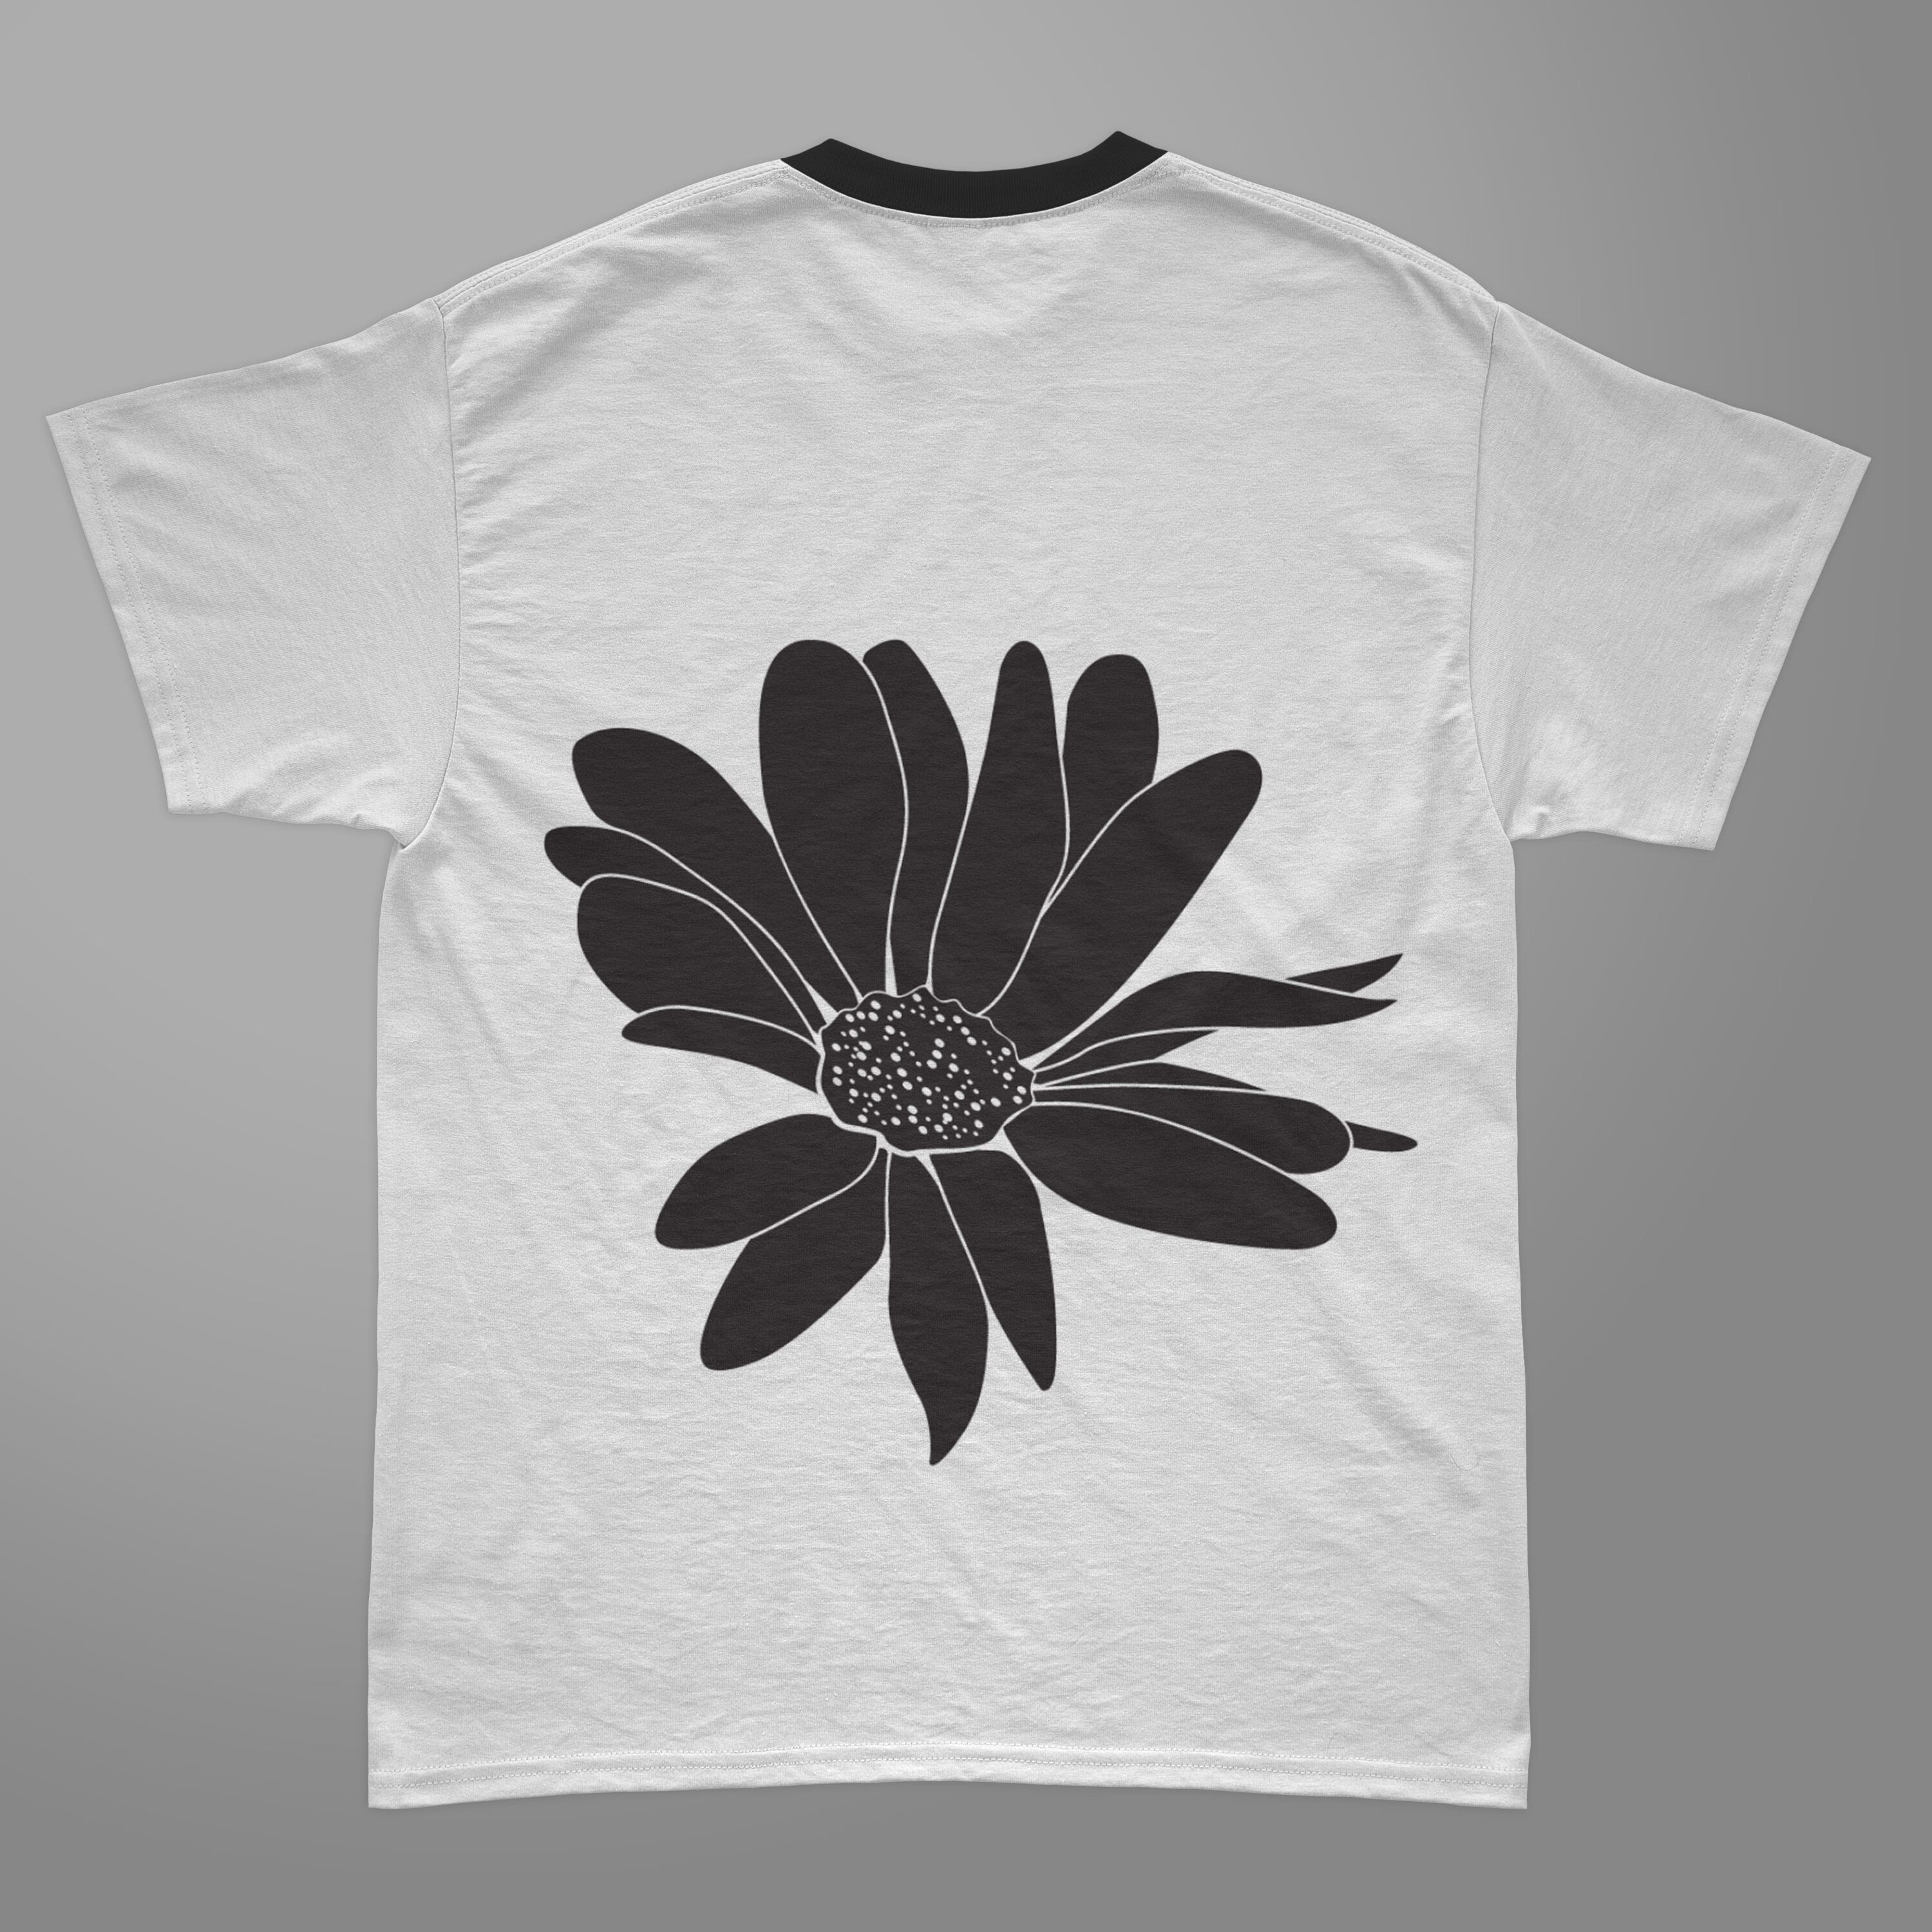 Cute daisy on the t-shirt design.